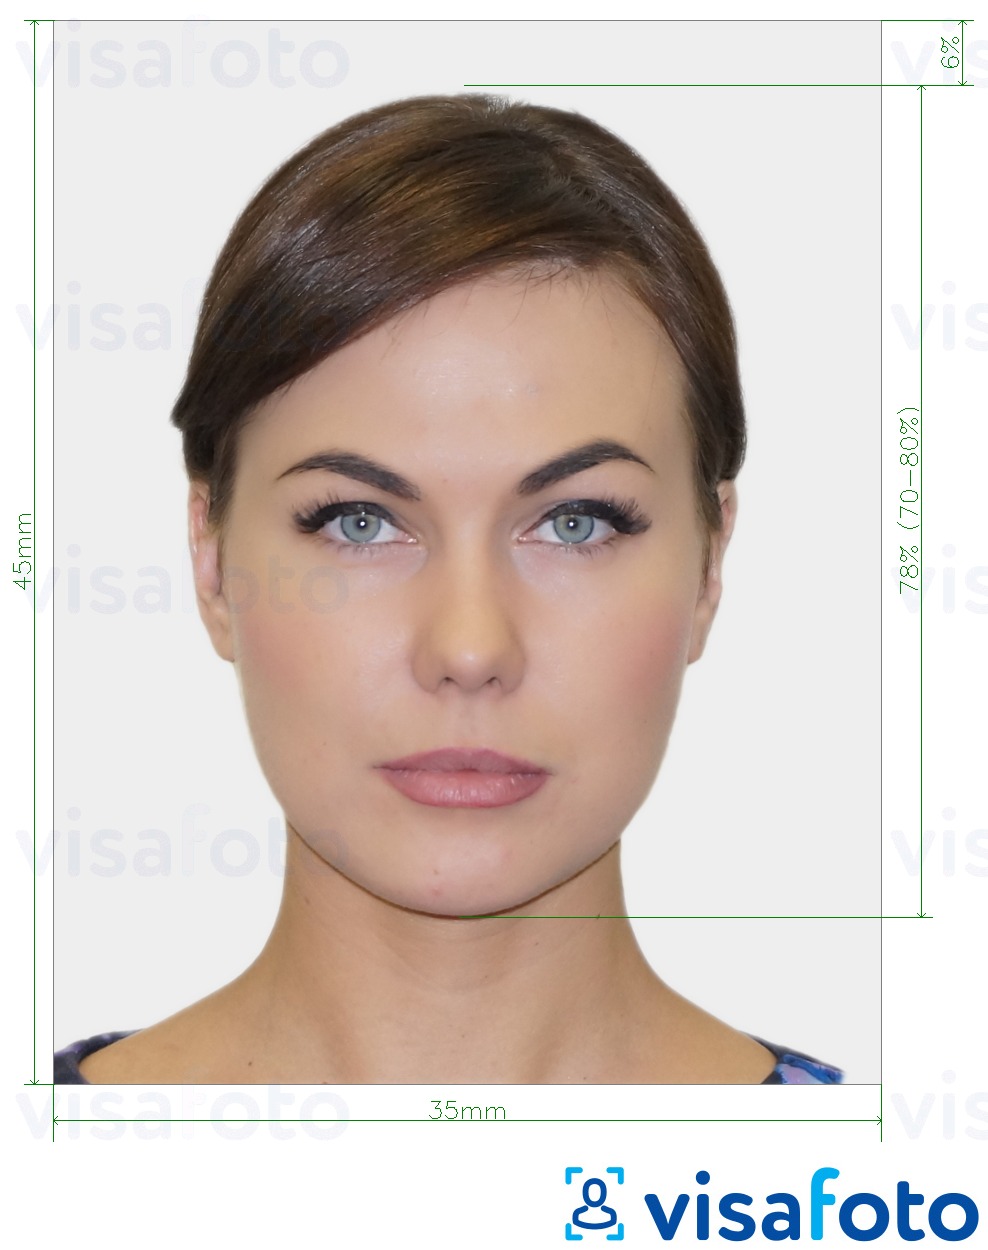 Exemples sur des photos pour Photo d'identité biométrique avec les spécifications de taille exactes